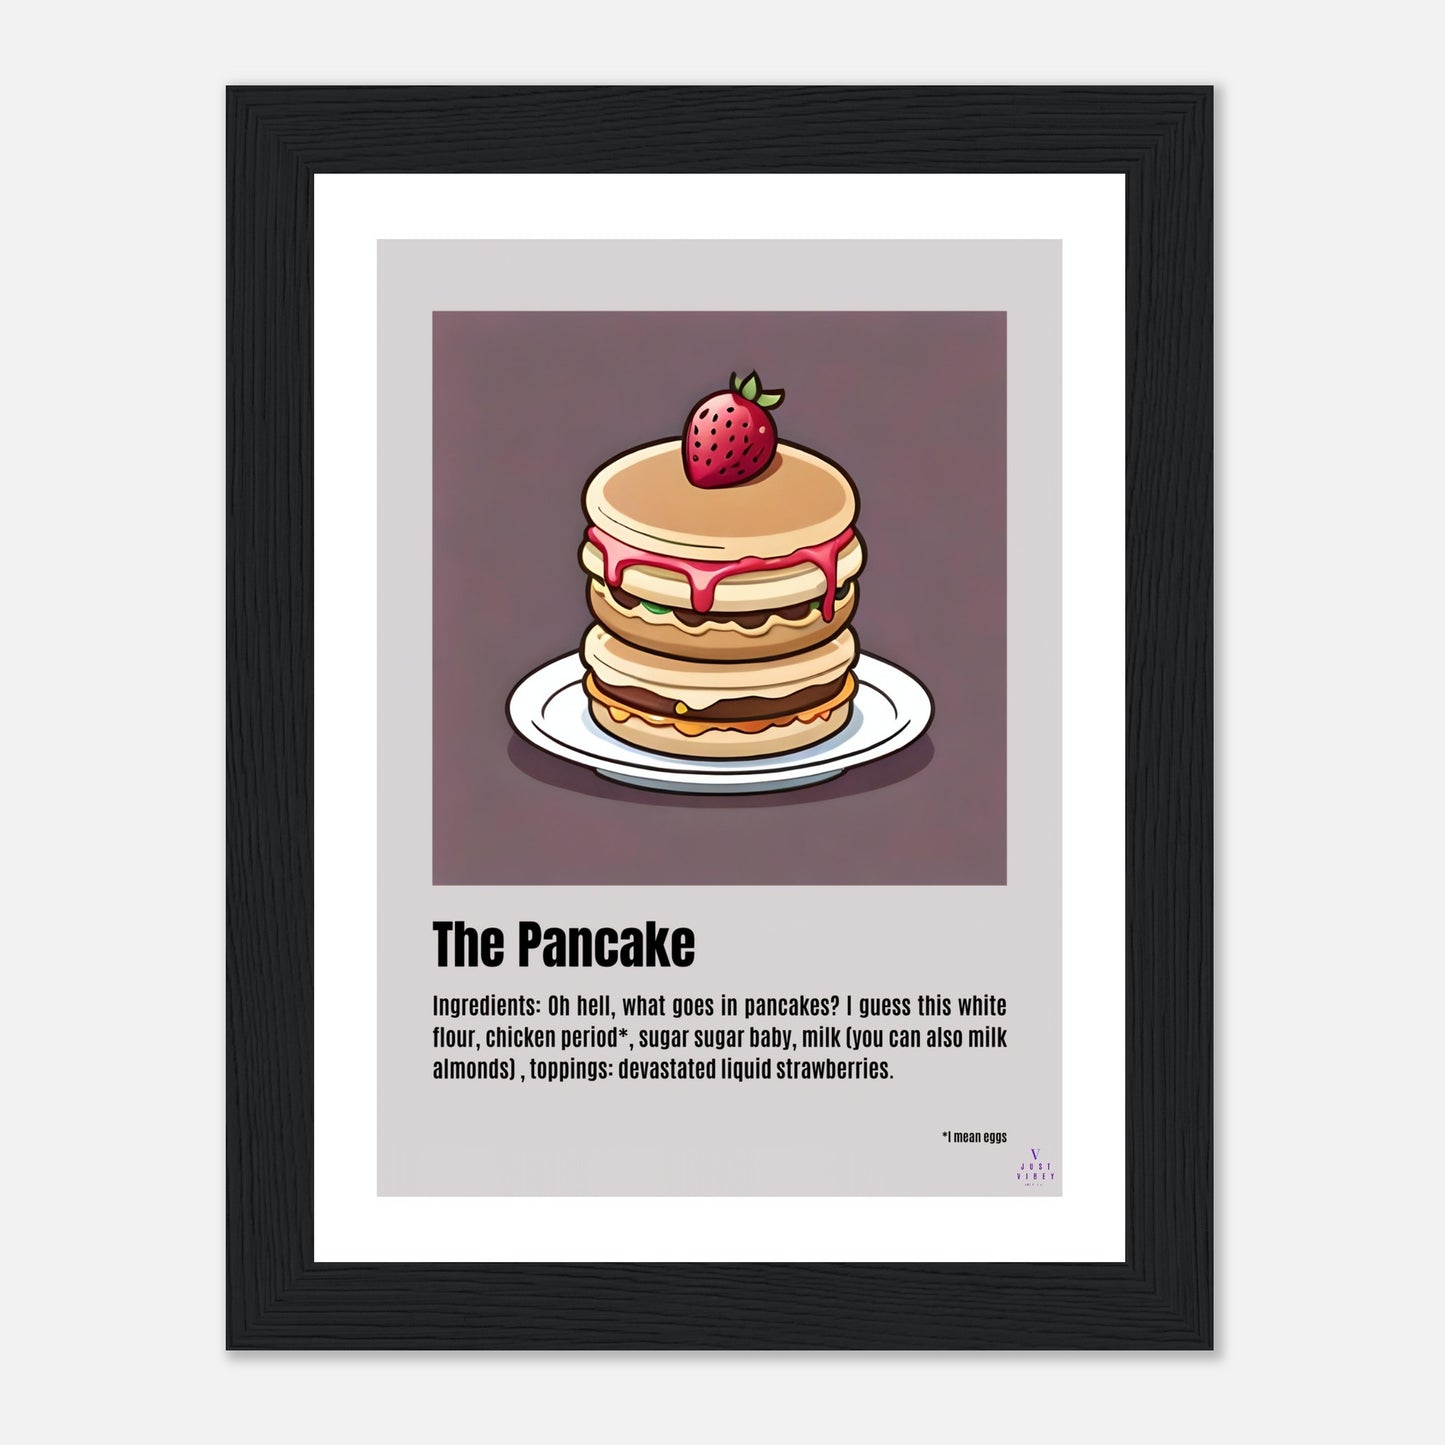 The Pancake.